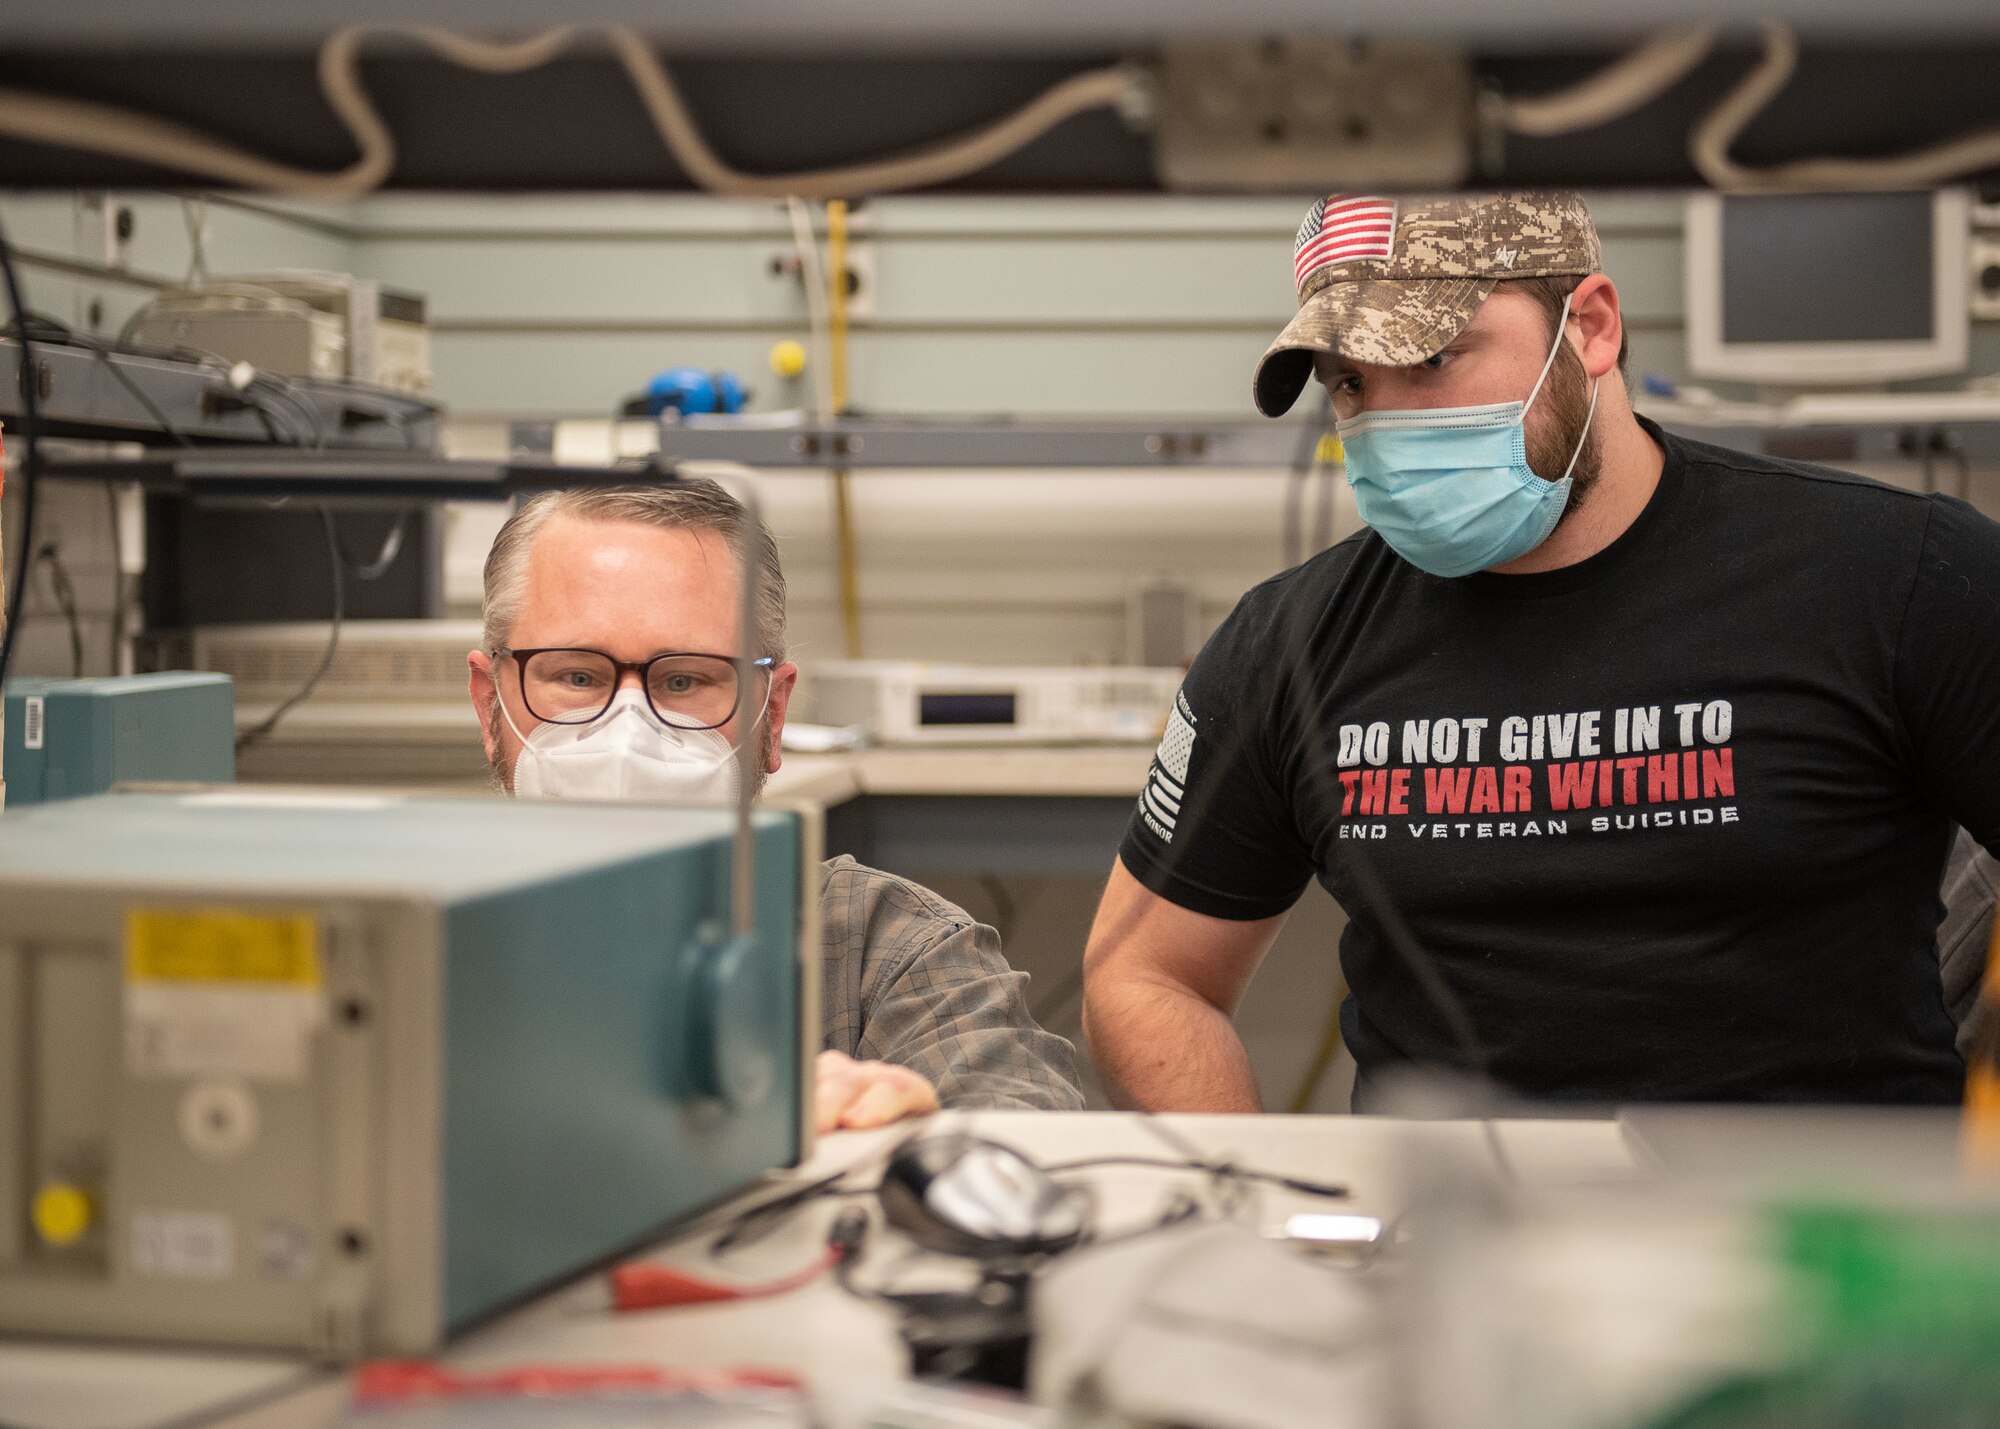 PMEL technicians conduct pulse measurements wearing face masks